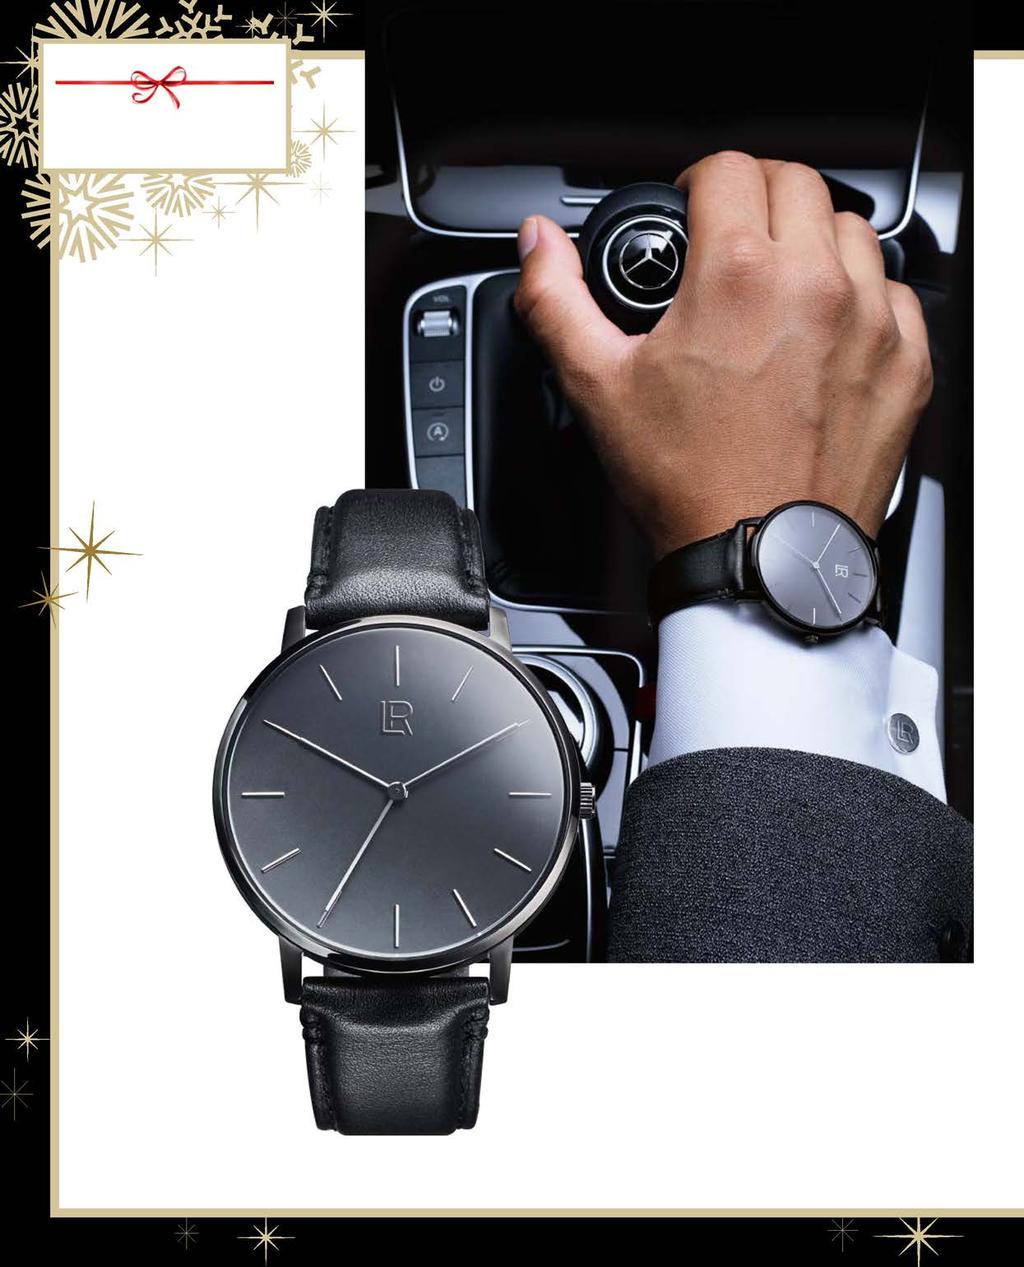 ALL I WANT FOR CHRISTMAS ЧУДЕСНА КОМПАНИЯ НОВО & ЛИМИТИРАНО ТОЧНО ЗА ПРАЗНИКА LR Мъжки часовник Класически и стилен! Страхотен часовник за мъжете, които винаги са в крак с времето.